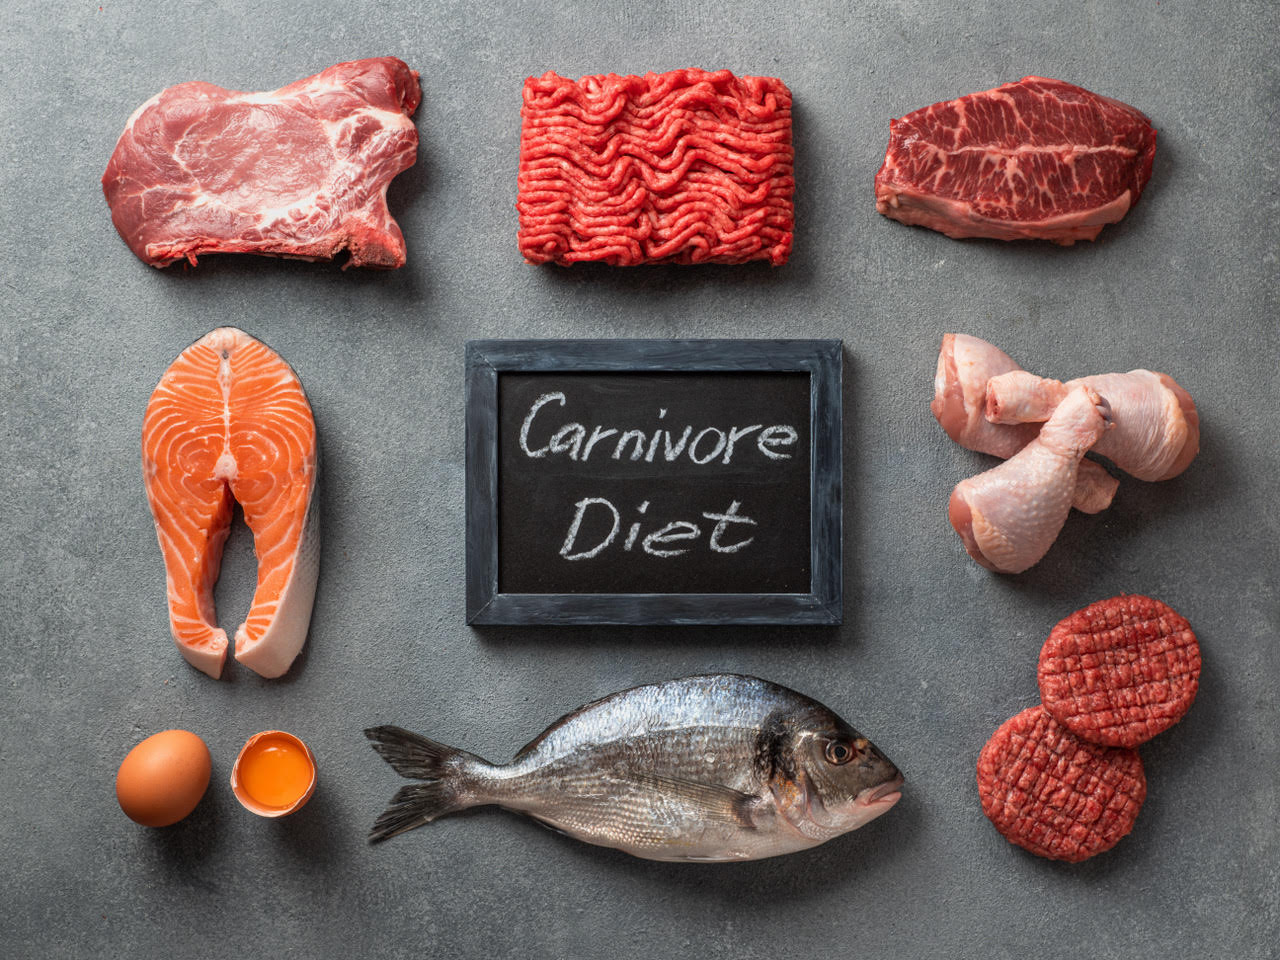 30 Day Carnivore Diet Challenge